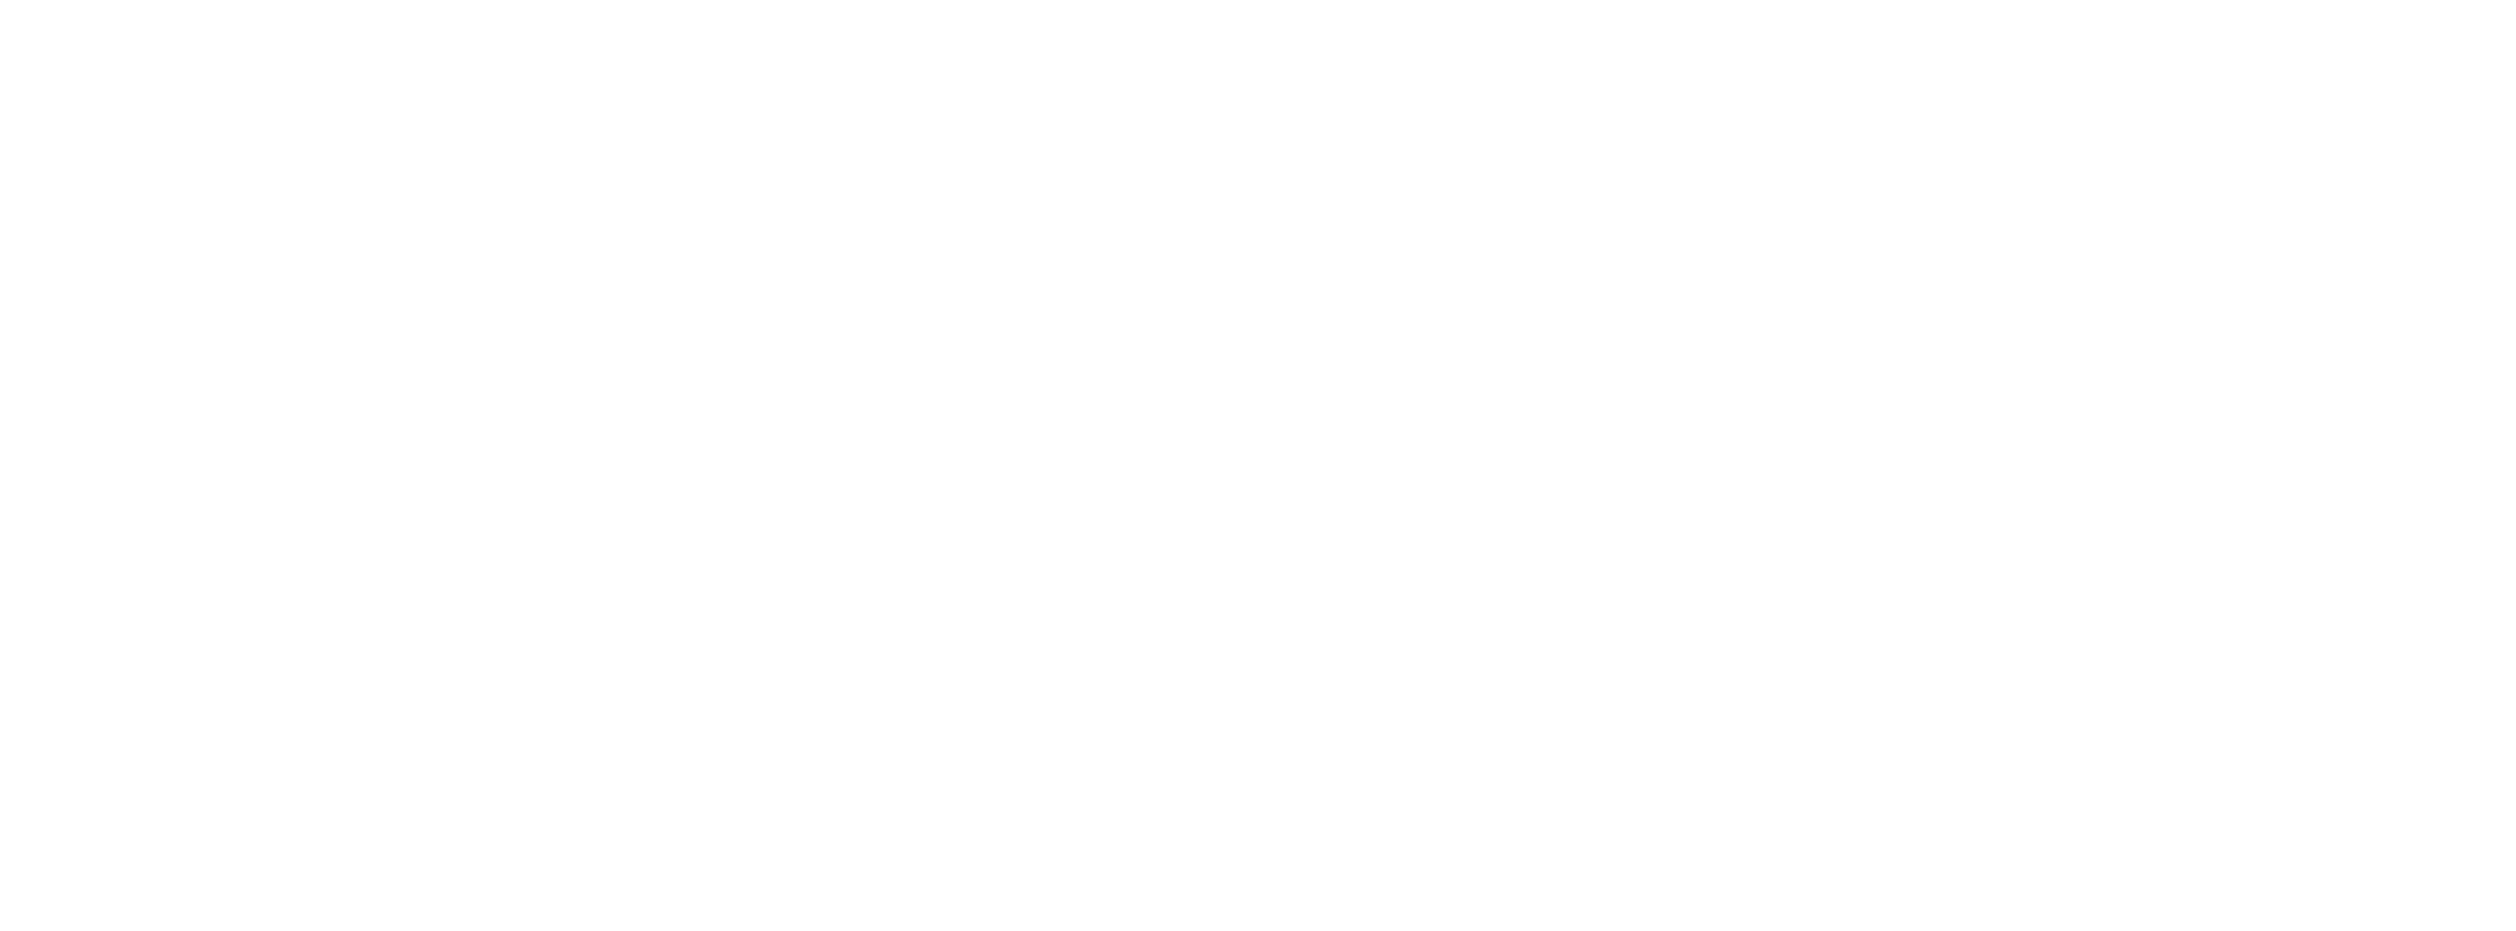 4 Switch